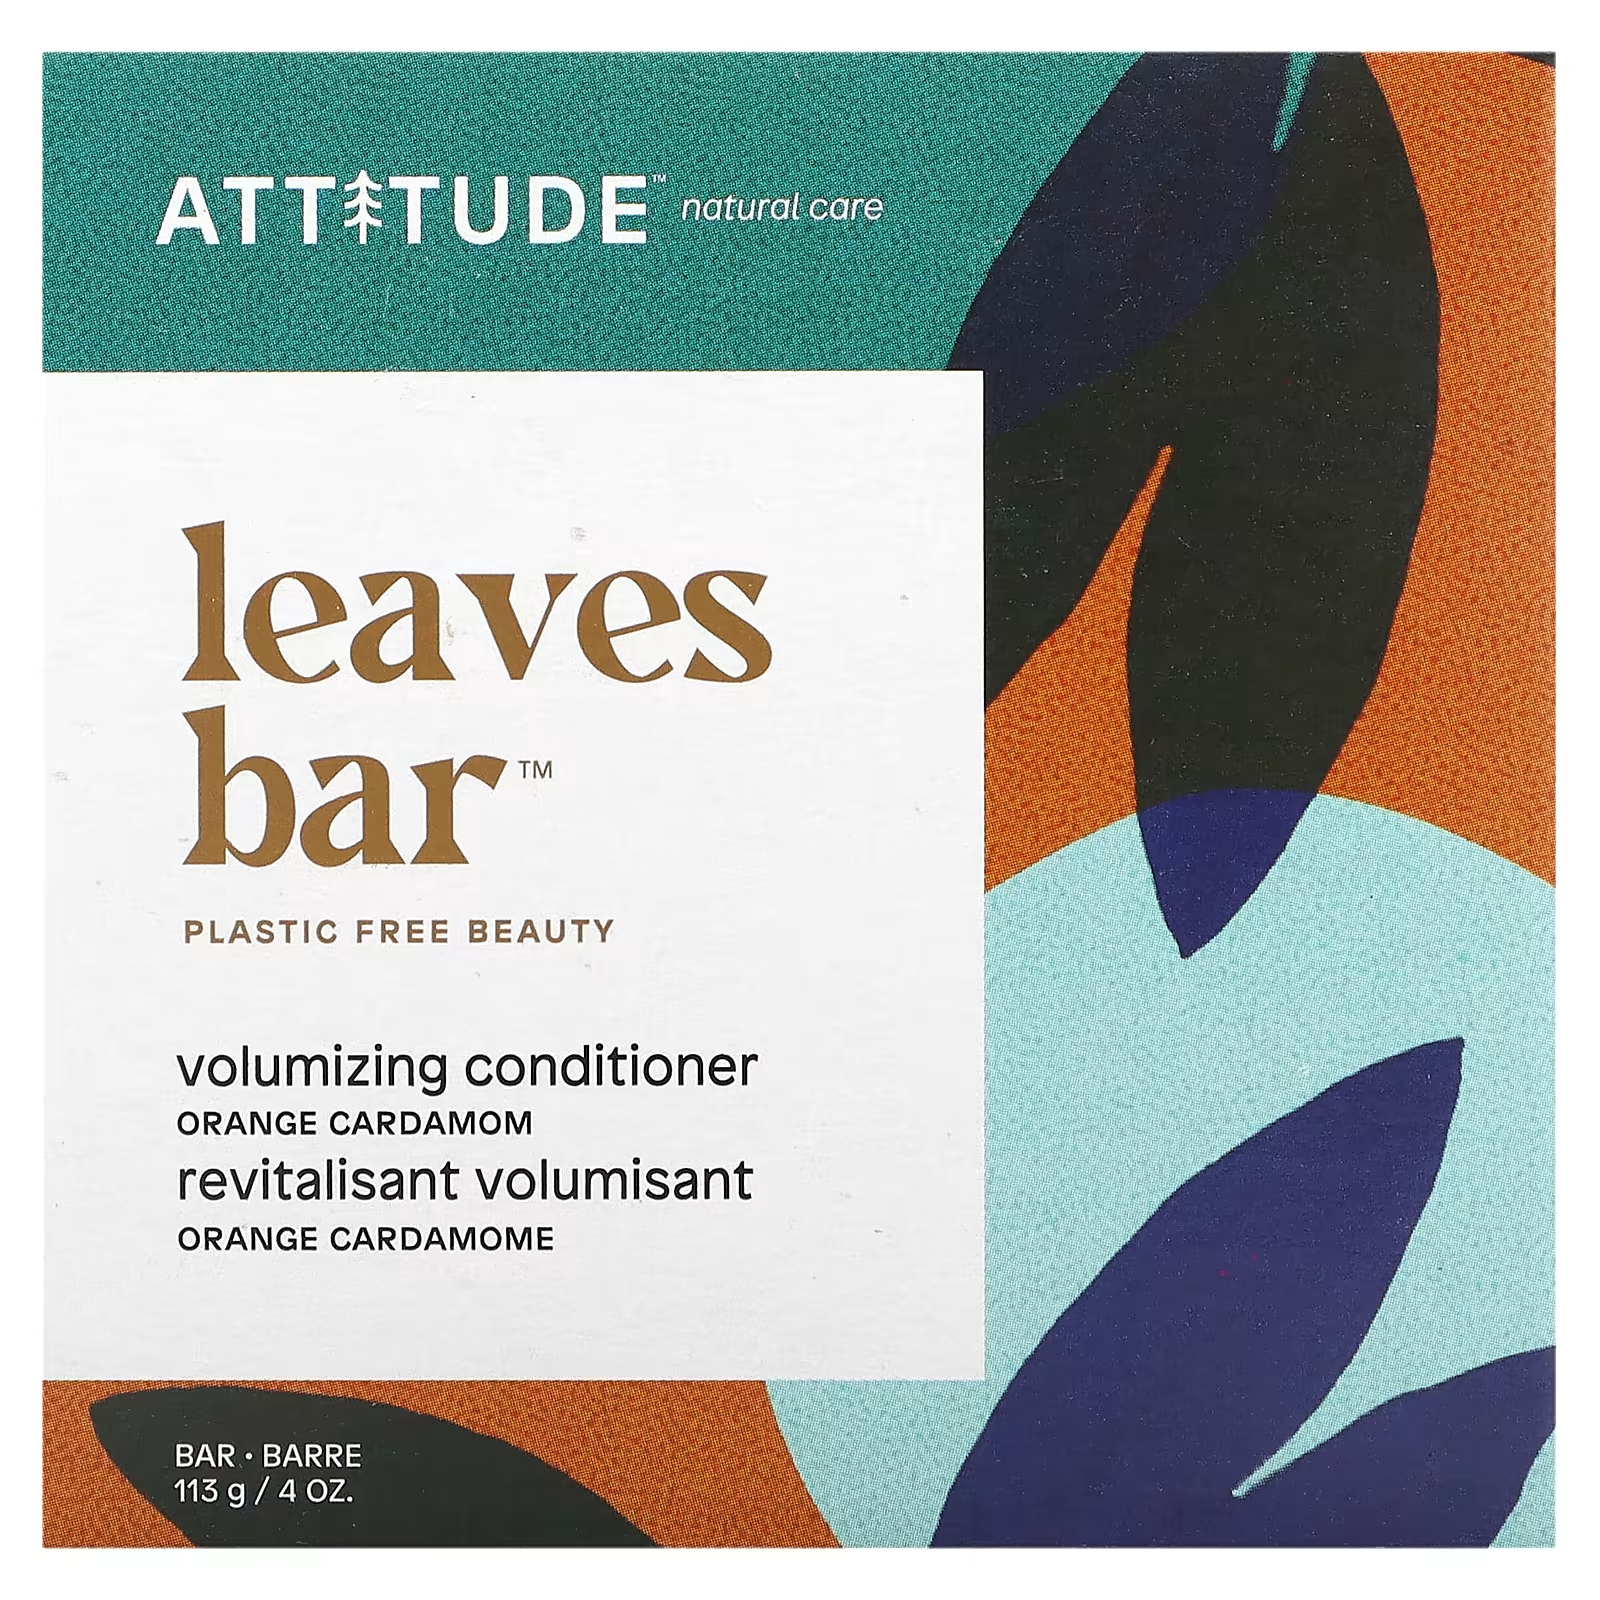 Кондиционер ATTITUDE Leaves Bar для объема апельсиновый кардамон, 113 г детокс кондиционер attitude leaves bar морская соль 113 г